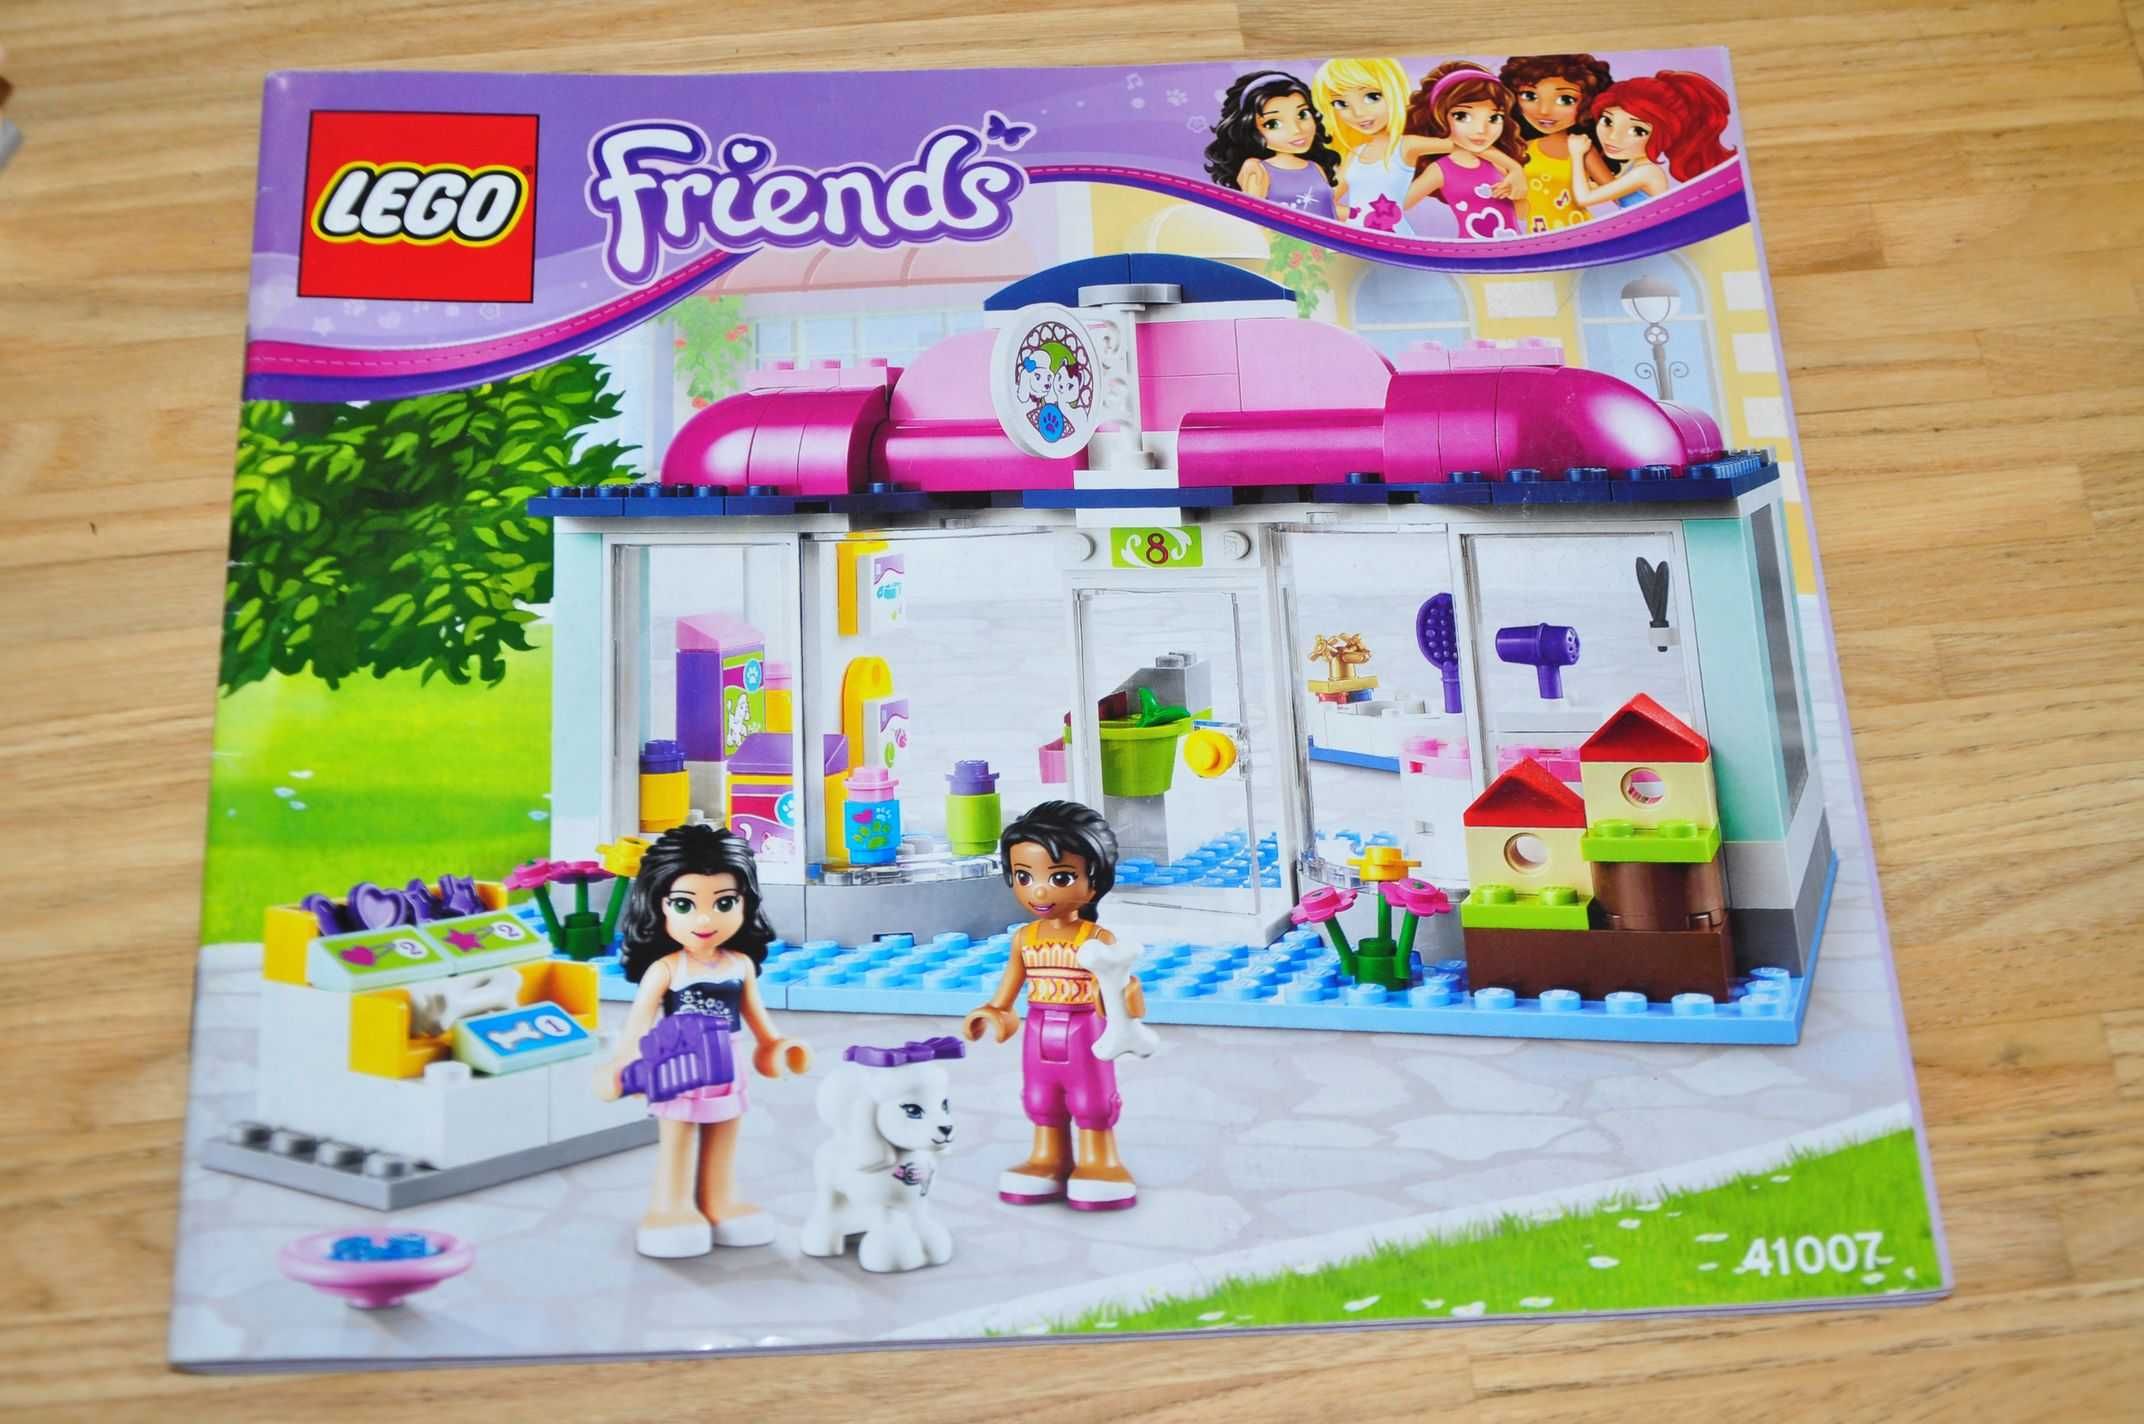 Z0058. Zestaw LEGO Friends 41007-1 Heartlake Pet Salon